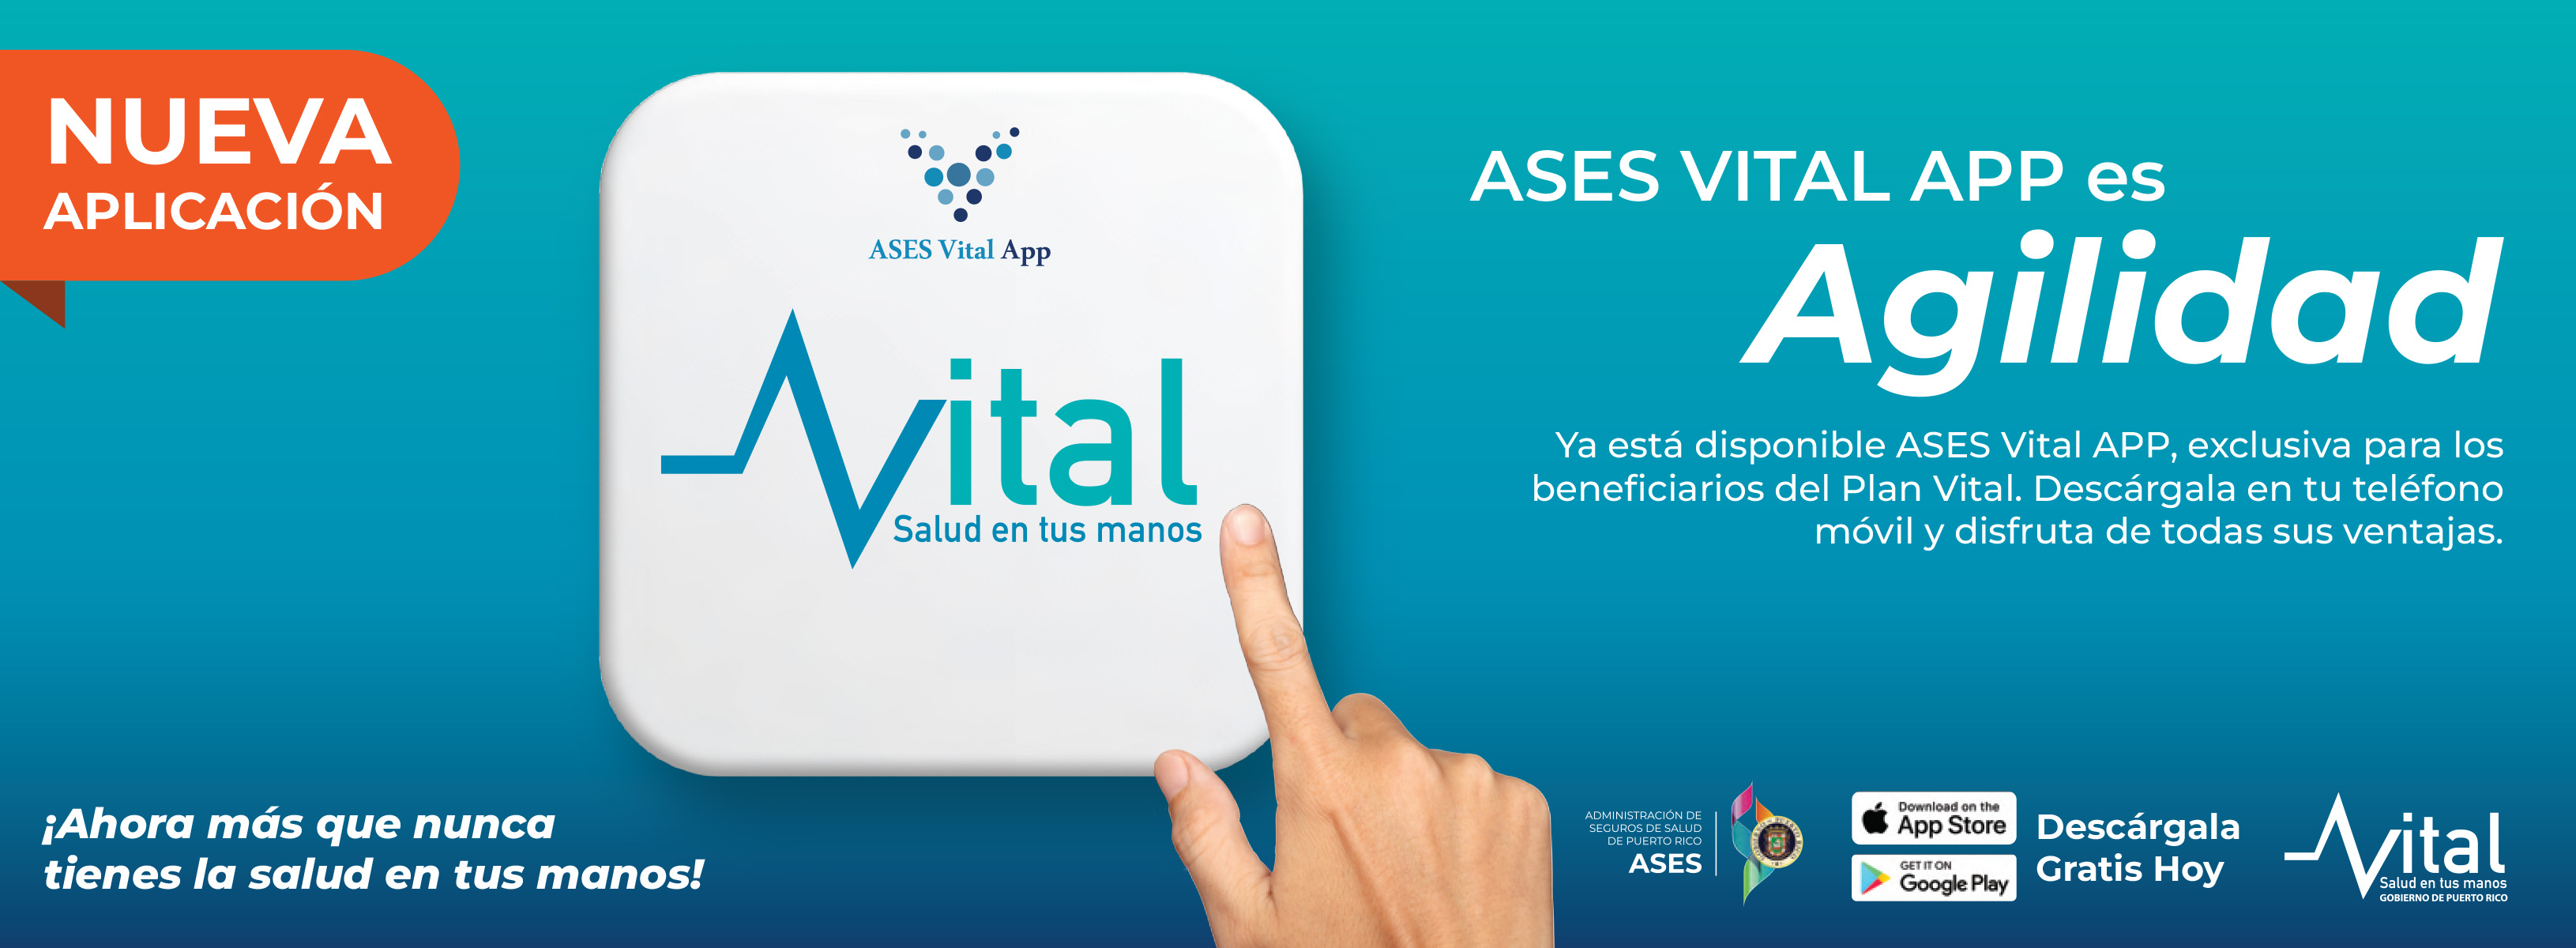 ASES Vital App Cintillo